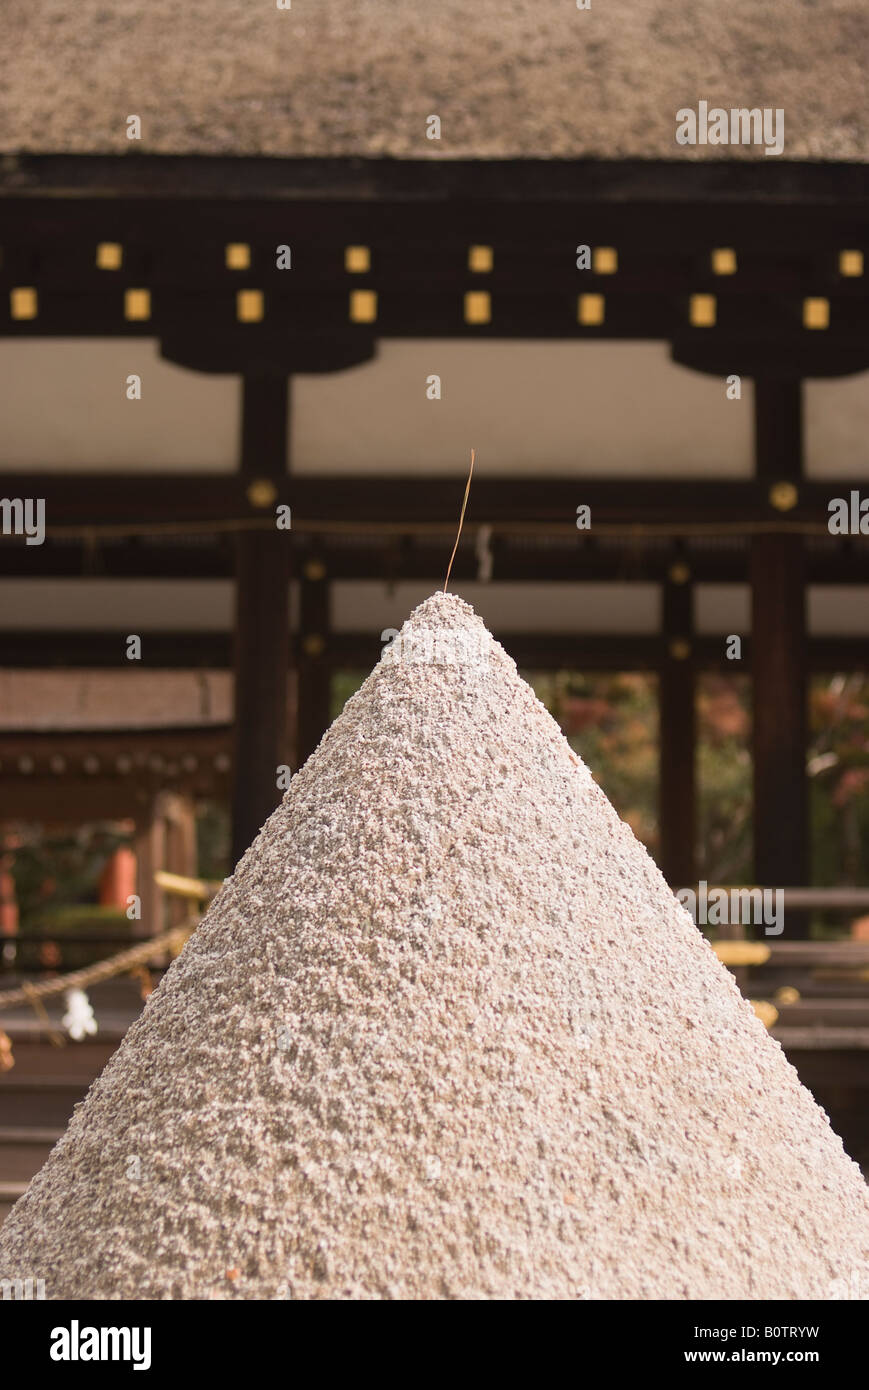 Heap of sand at Kamigamo Shrine, Kyoto, Japan Stock Photo